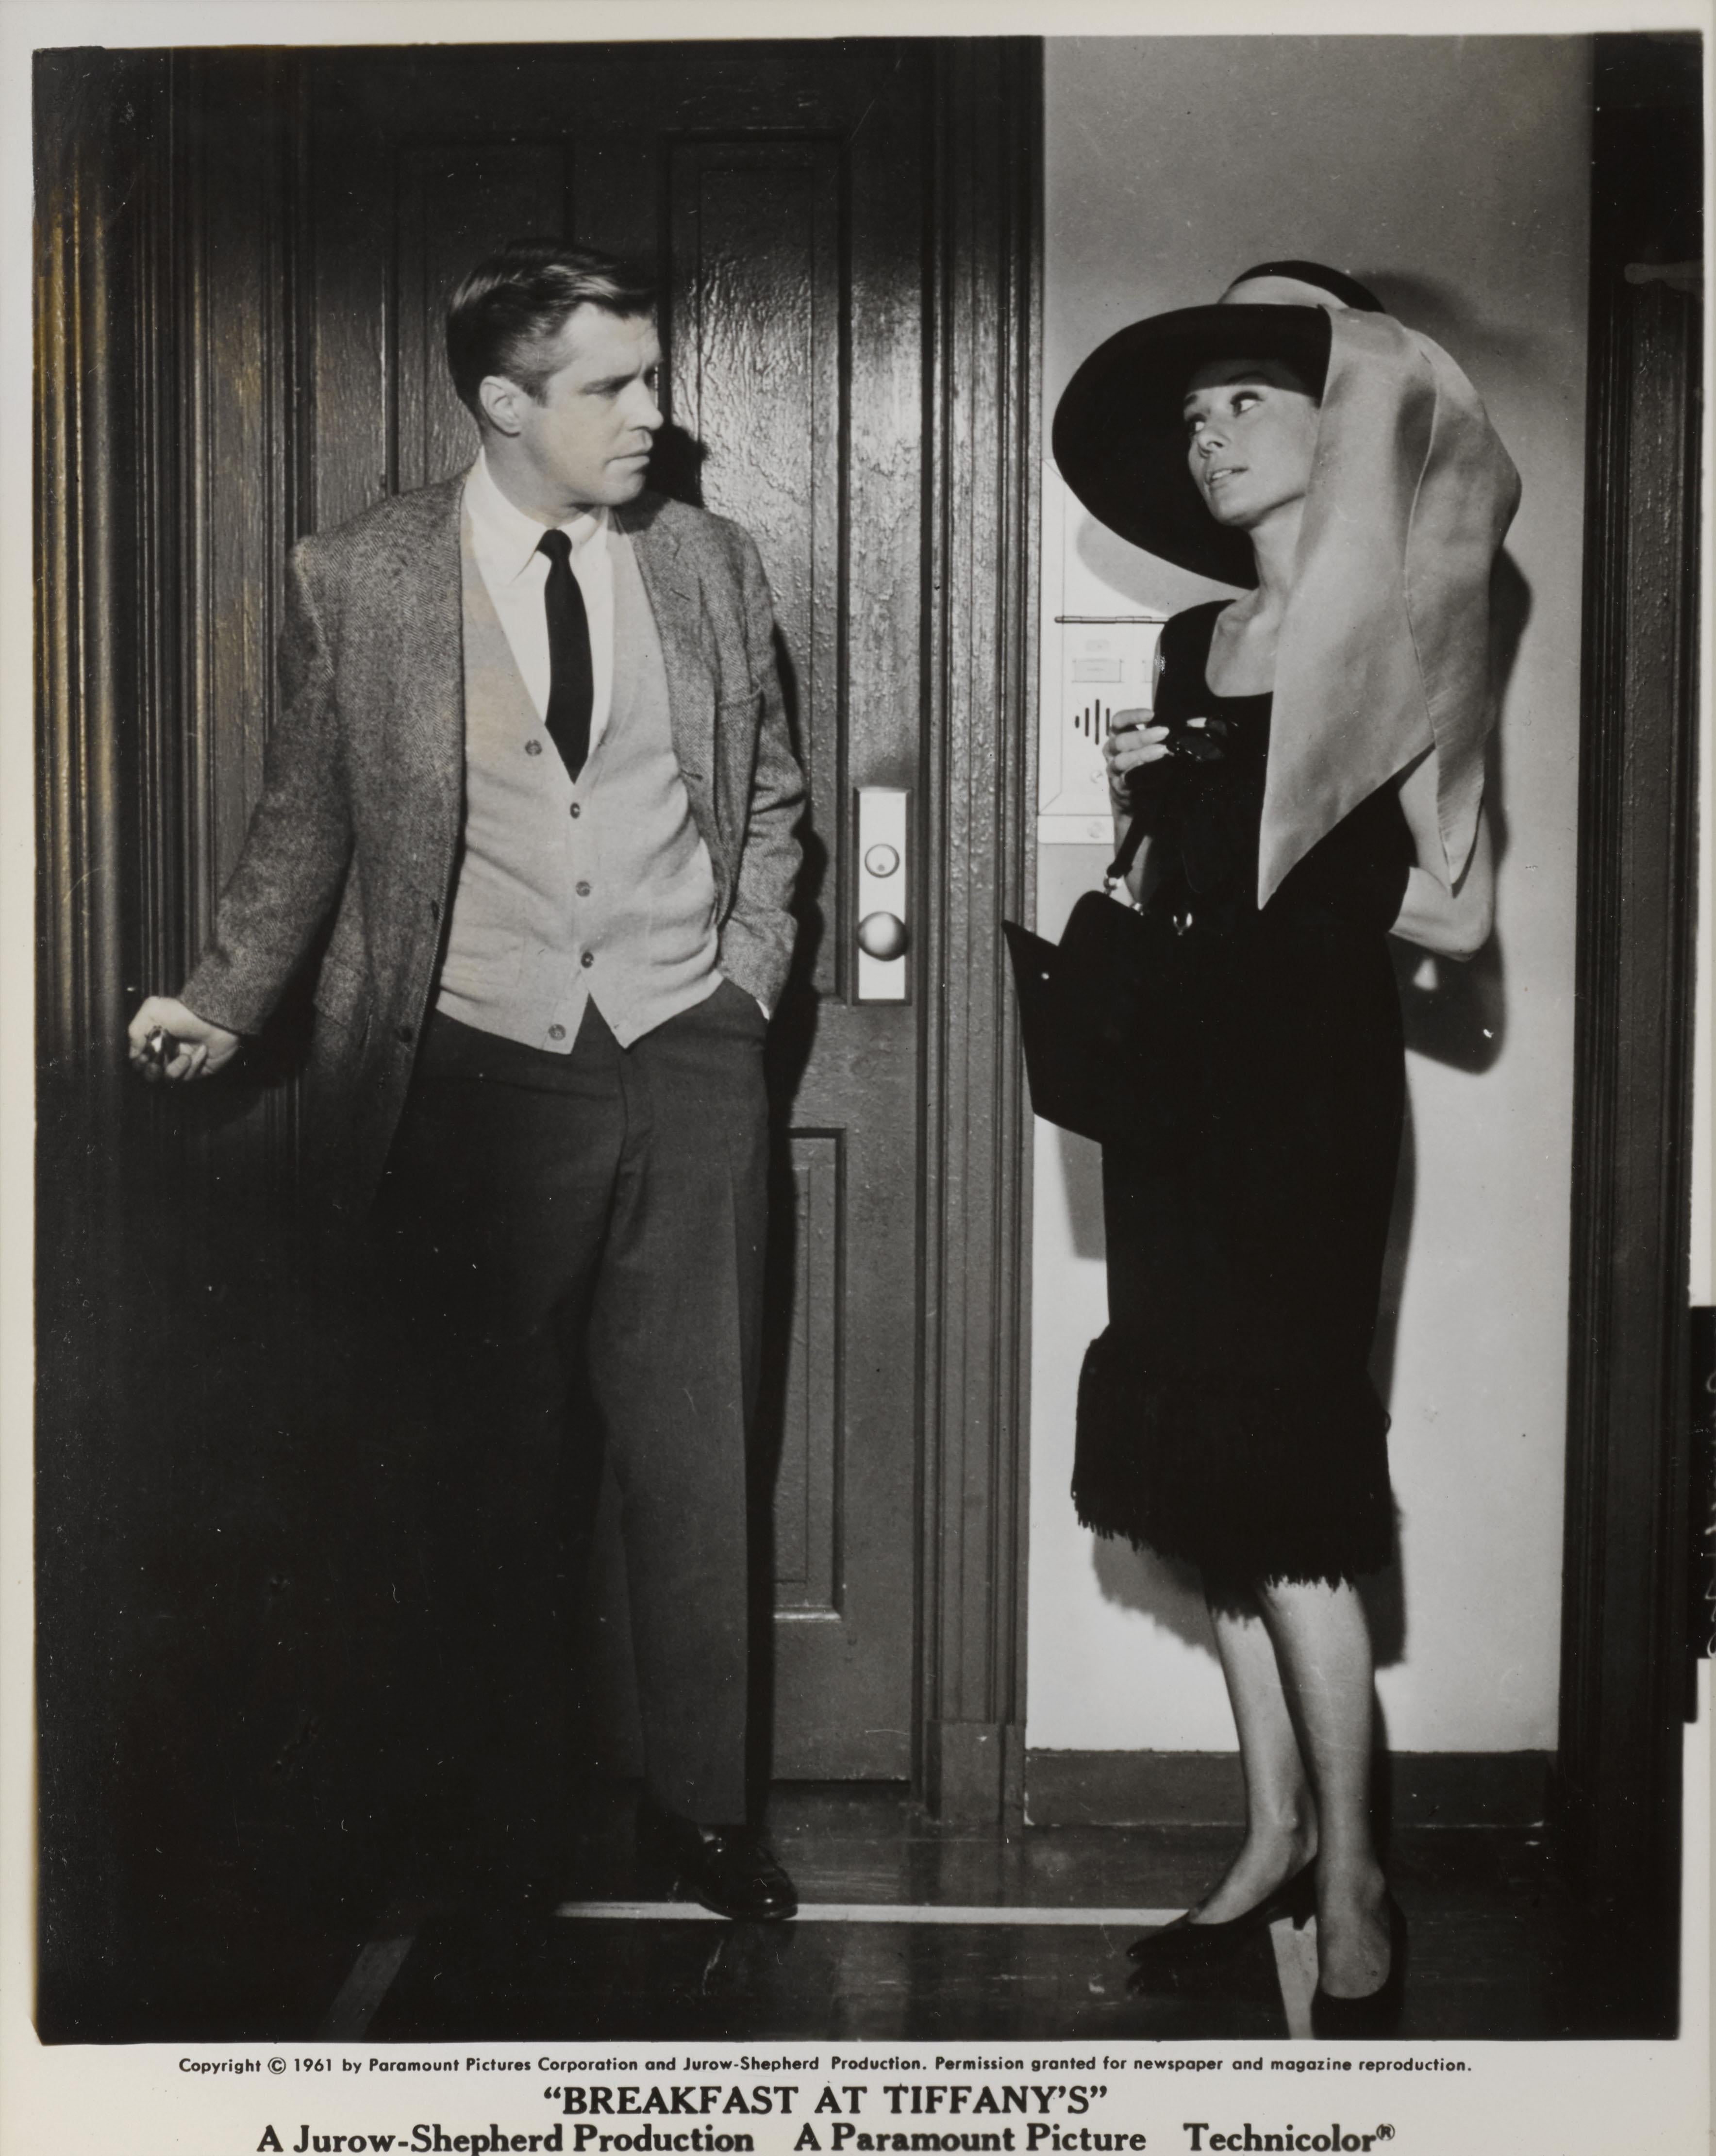 Original-Schwarzweiß-Fotostandbild für die legendäre Audrey Hepburn-Komödie Romance von 1961. Der Film wurde von Blake Edwards inszeniert und zeigt Audrey Hepburn und George Peppard. Dies ist zweifelsohne Hepburns berühmteste und ikonischste Rolle.